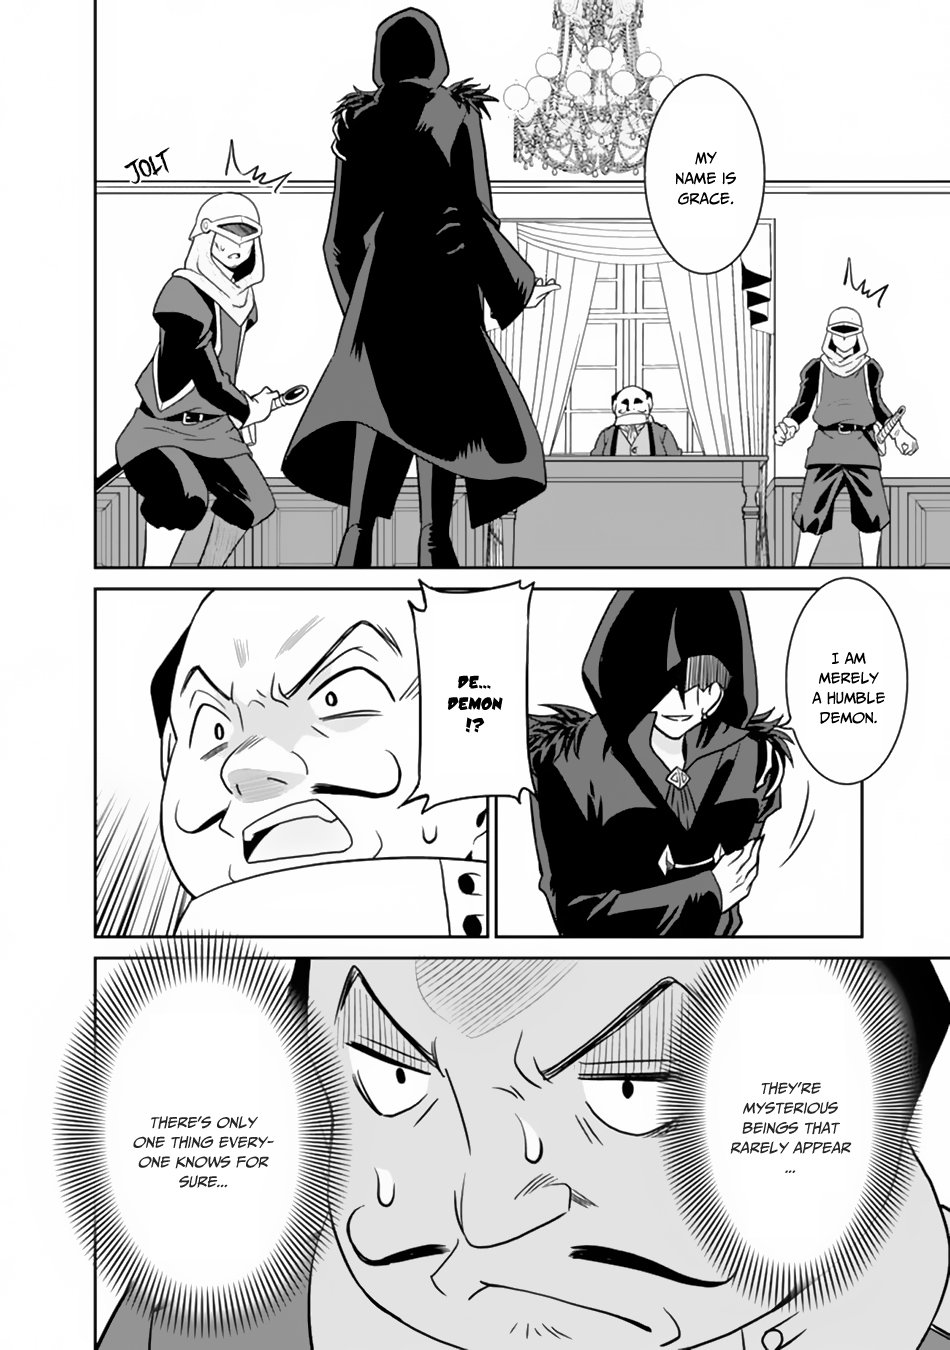 Saikyou no Shuzoku ga Ningen Datta Ken Vol.3 Ch.25 Page 7 - Mangago